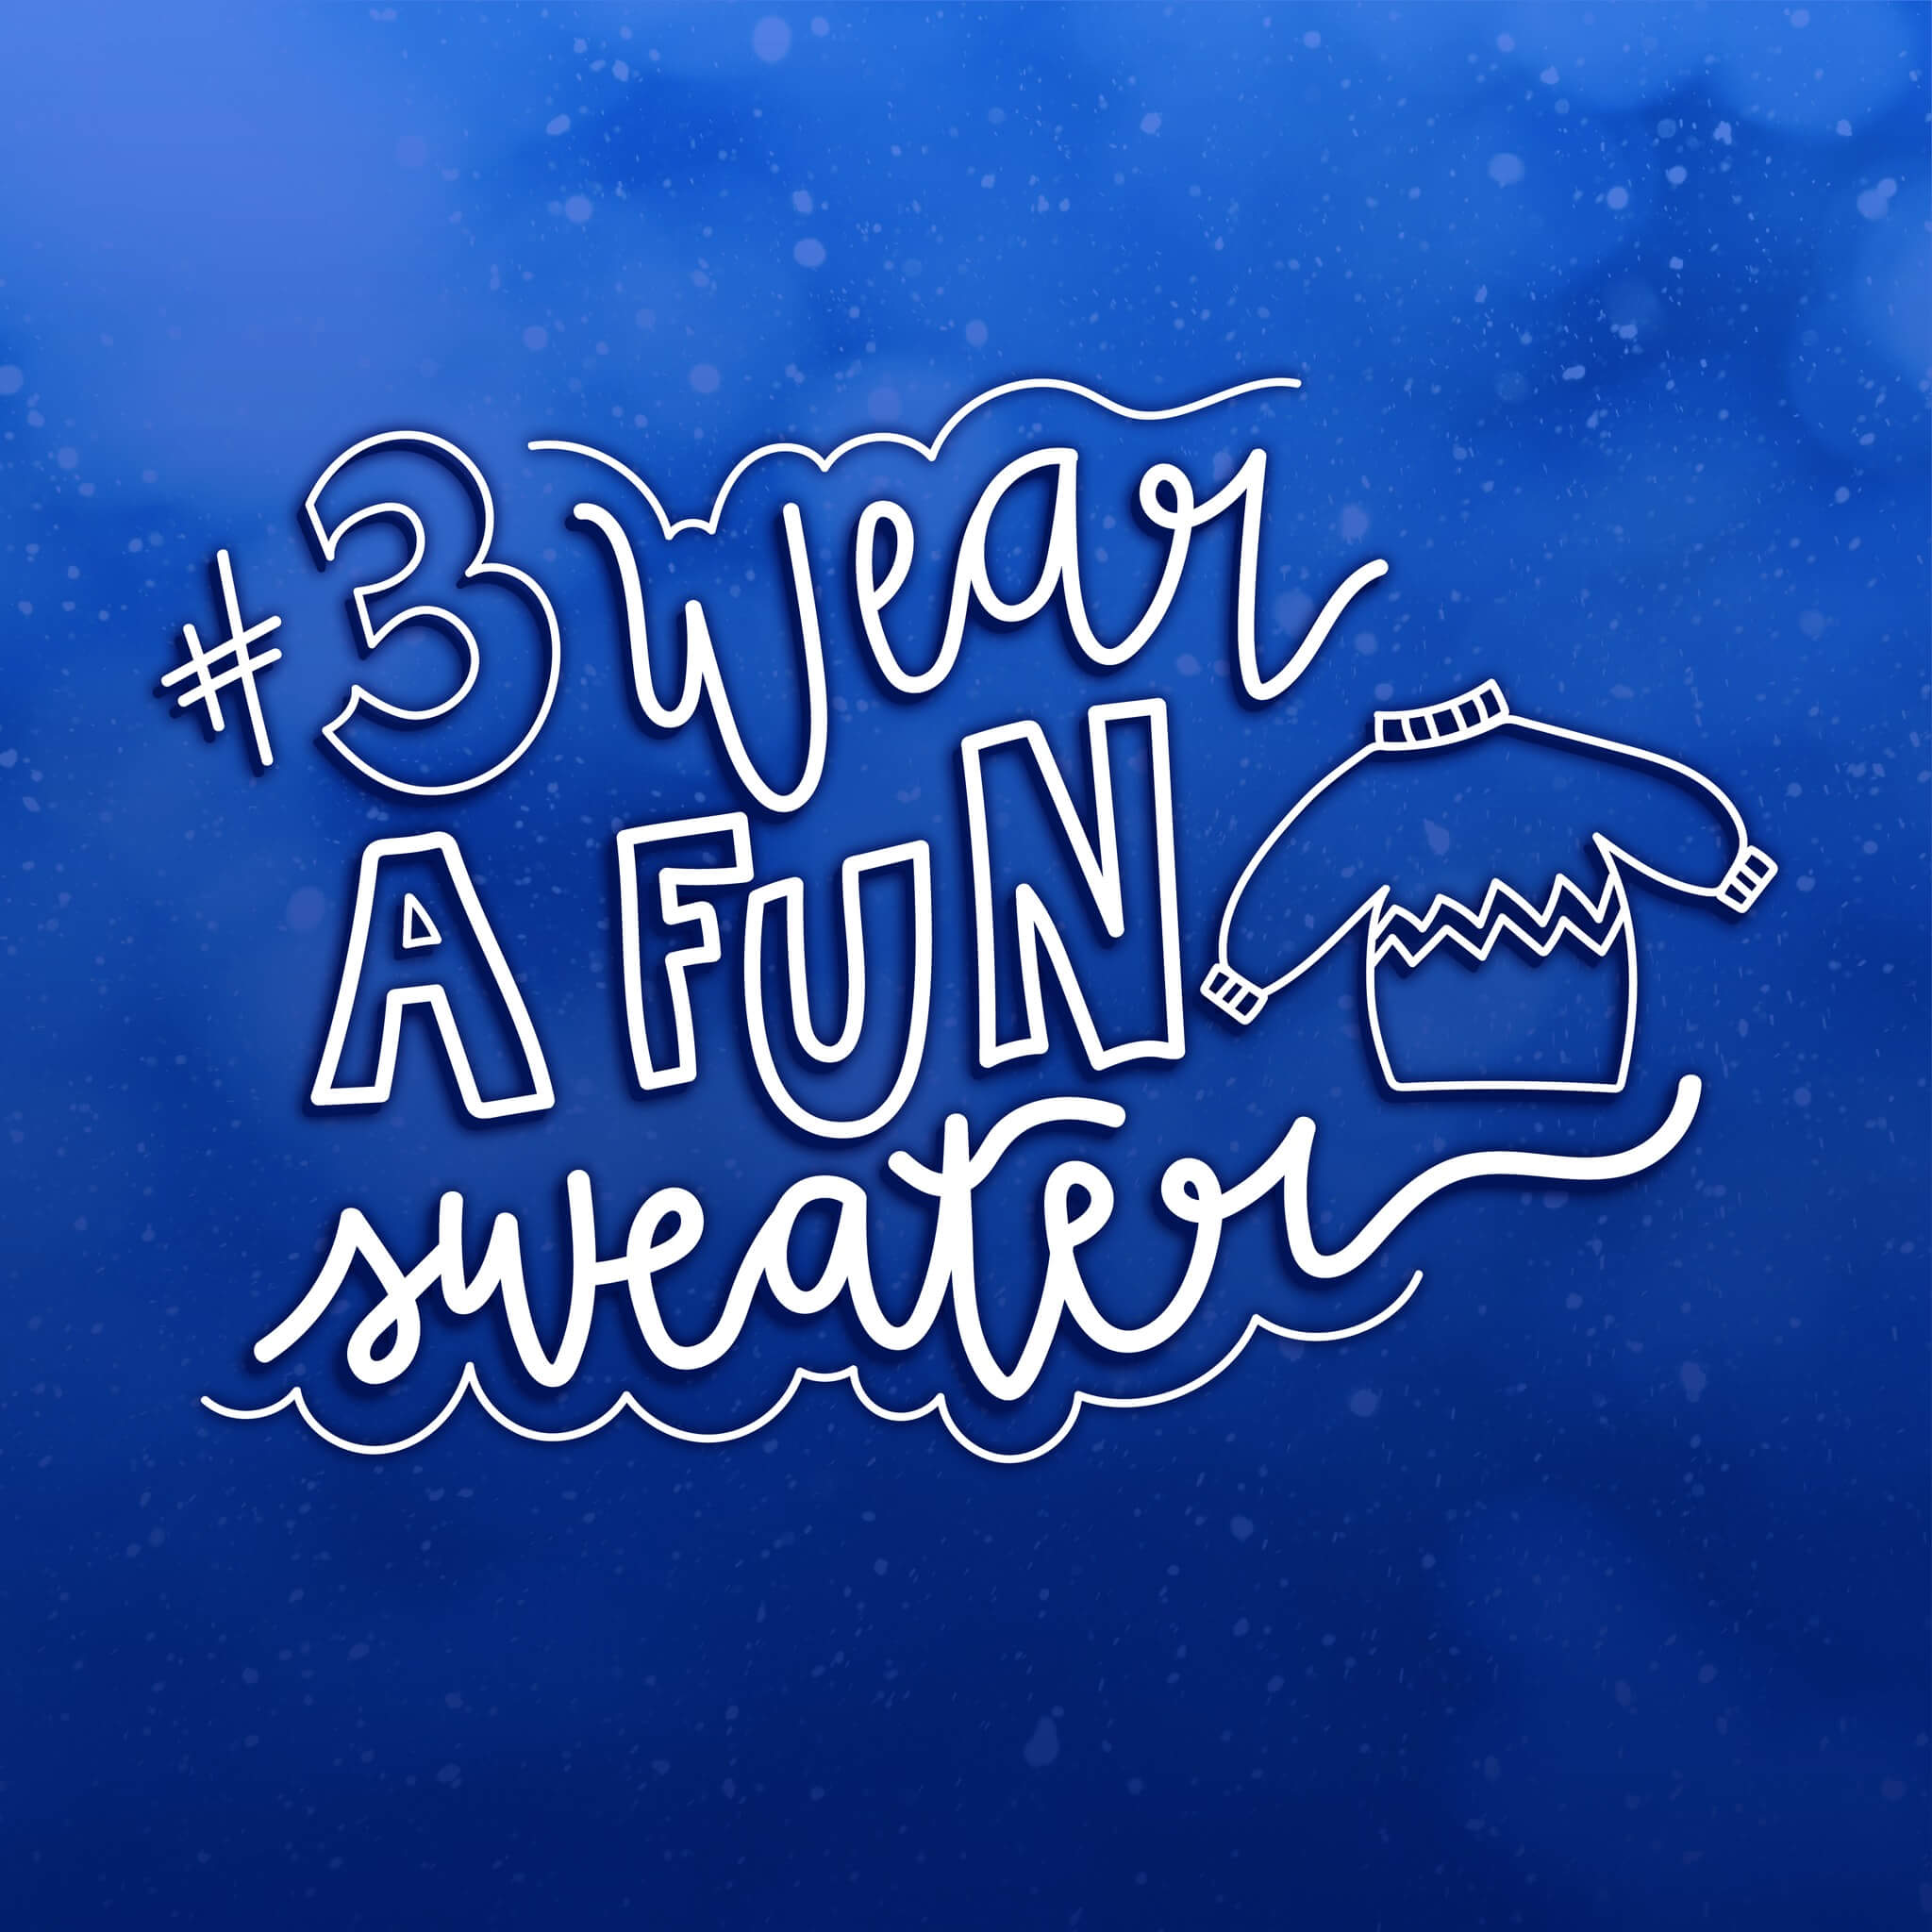 Bucket List #3: Wear a Fun Sweater